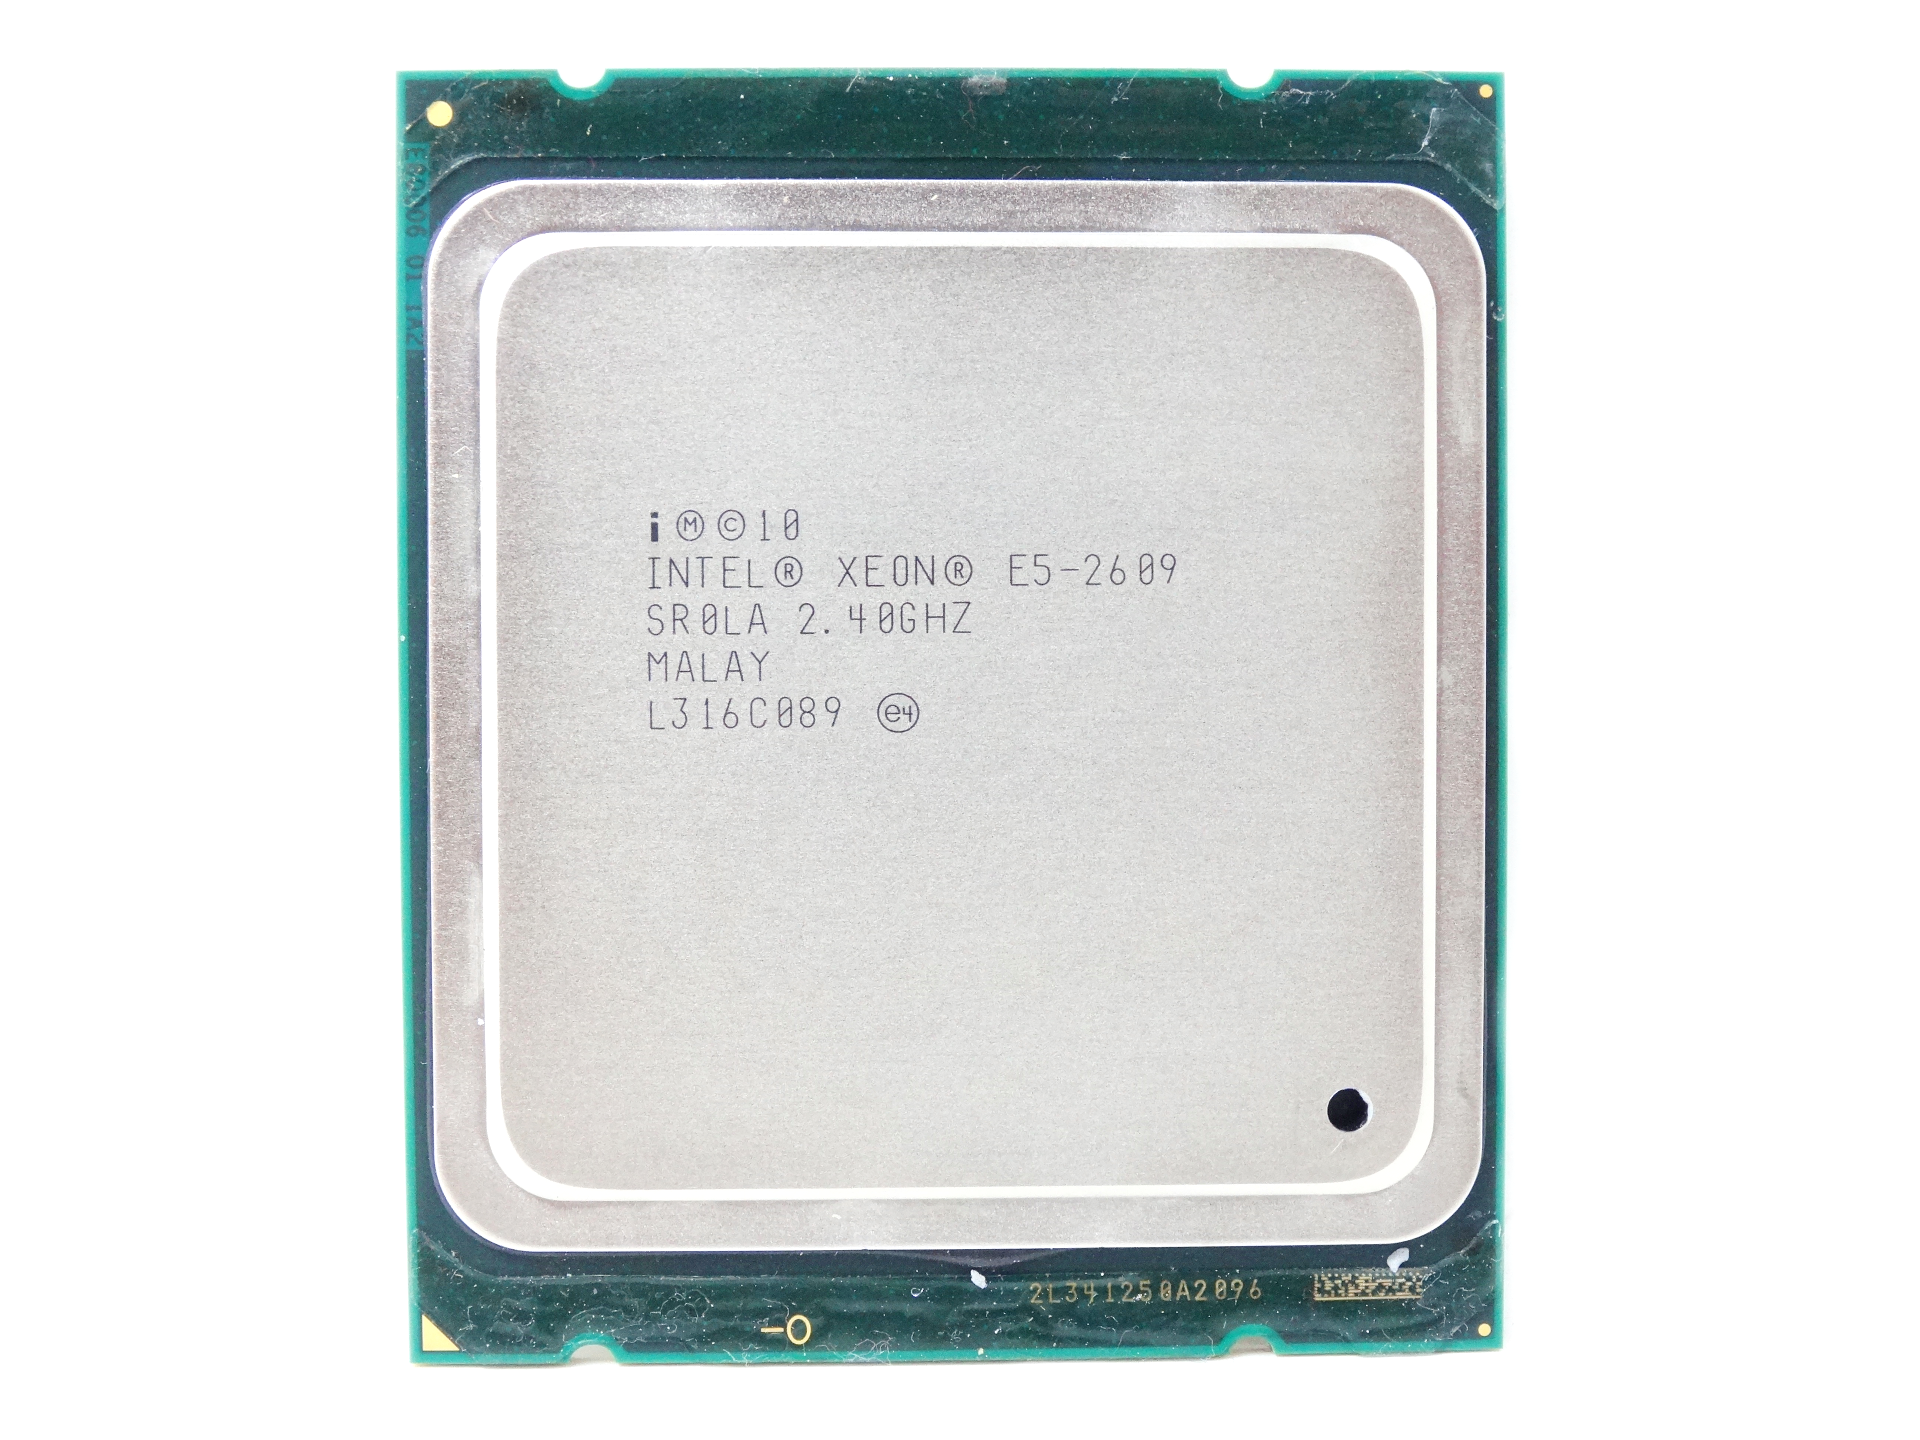 Intel Xeon E5-2609 2.40GHZ Quad Core 10MB Cache LGA2011 CPU Processor (SR0LA)